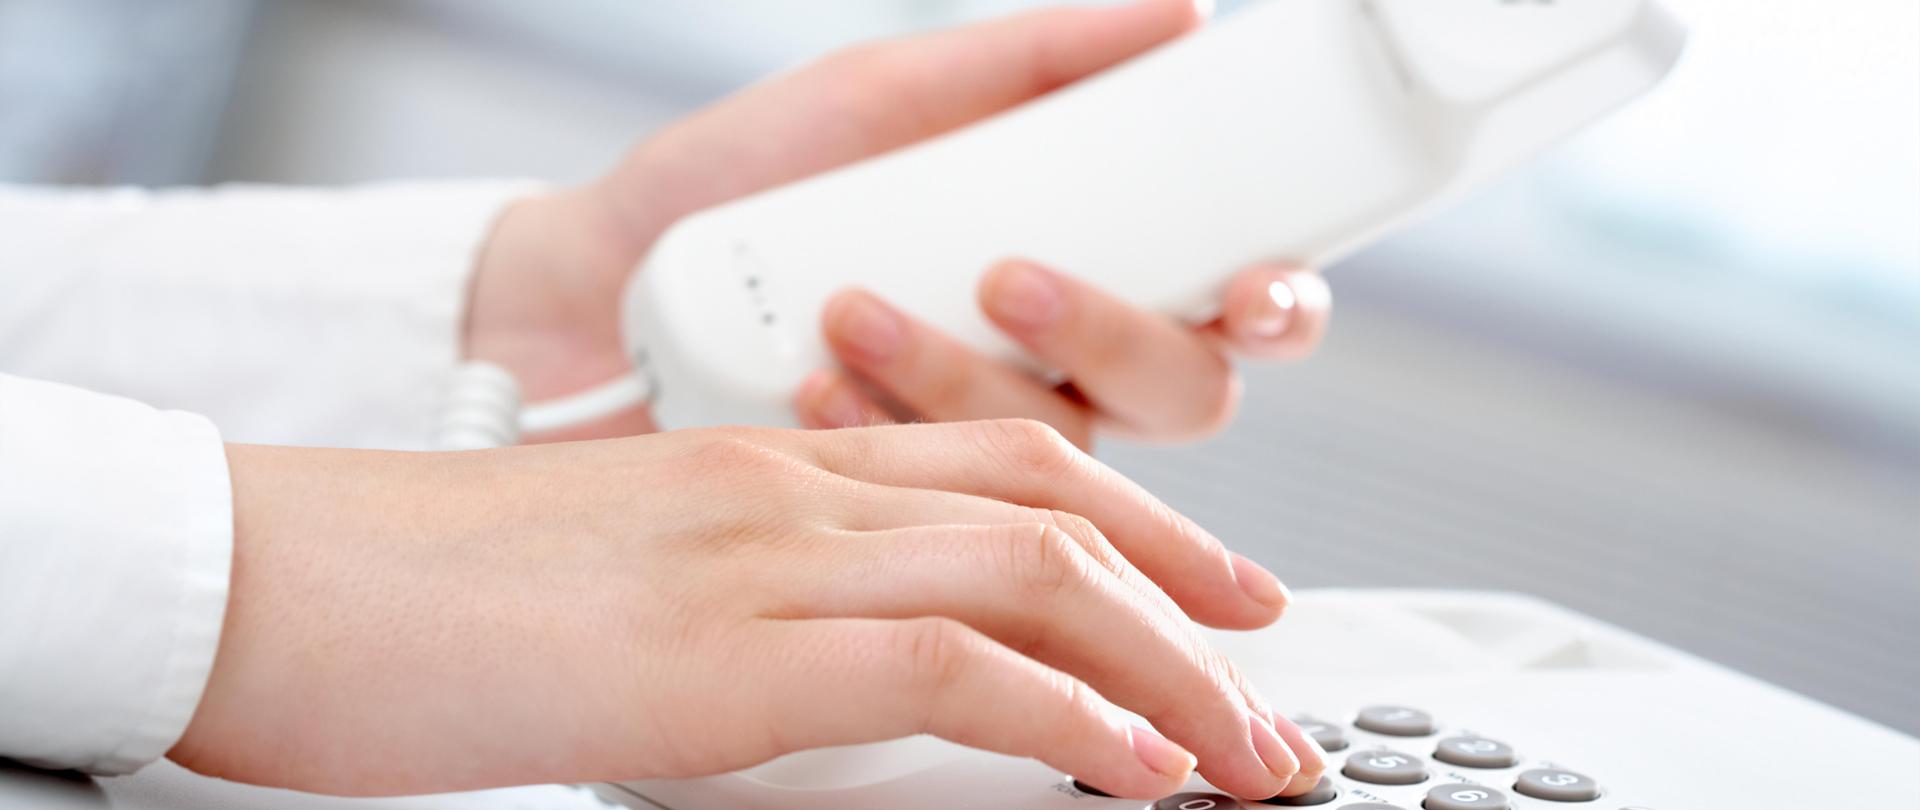 W lewej ręce trzymana słuchawka telefonu a palce prawej ręki naciskają numery na klawiaturze